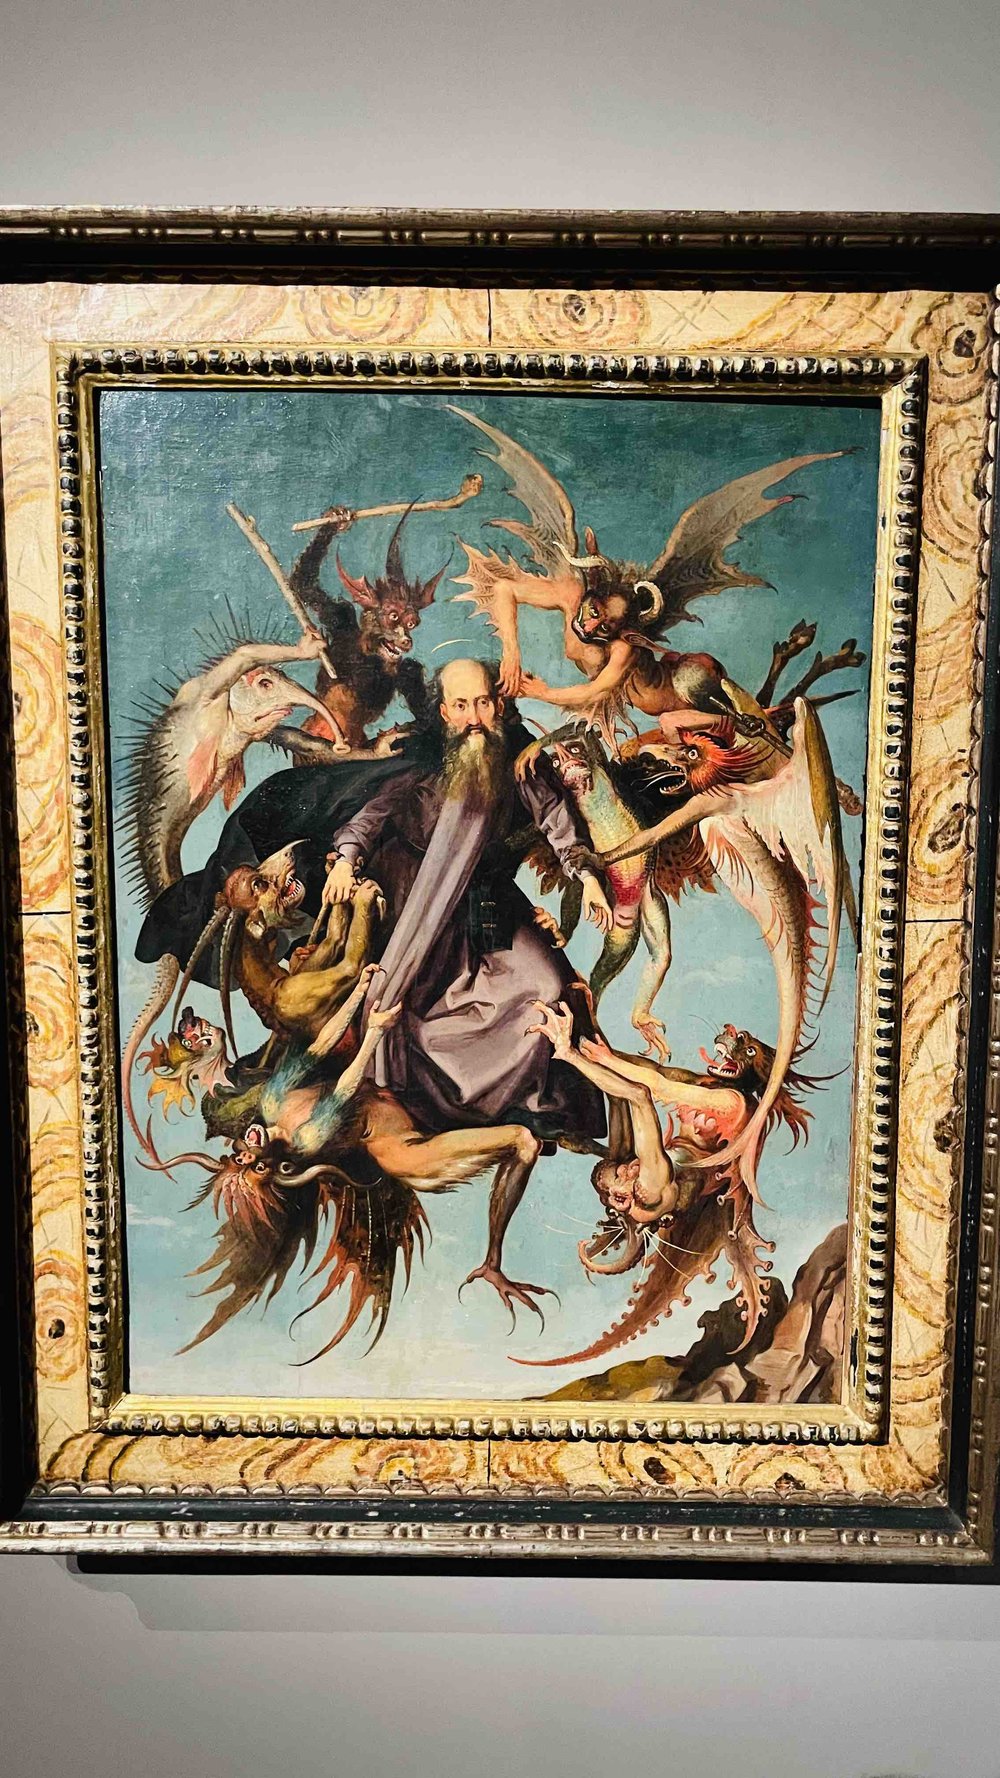 100 Le tentazioni di sant'Antonio, Da Martin Schongauer .jpeg